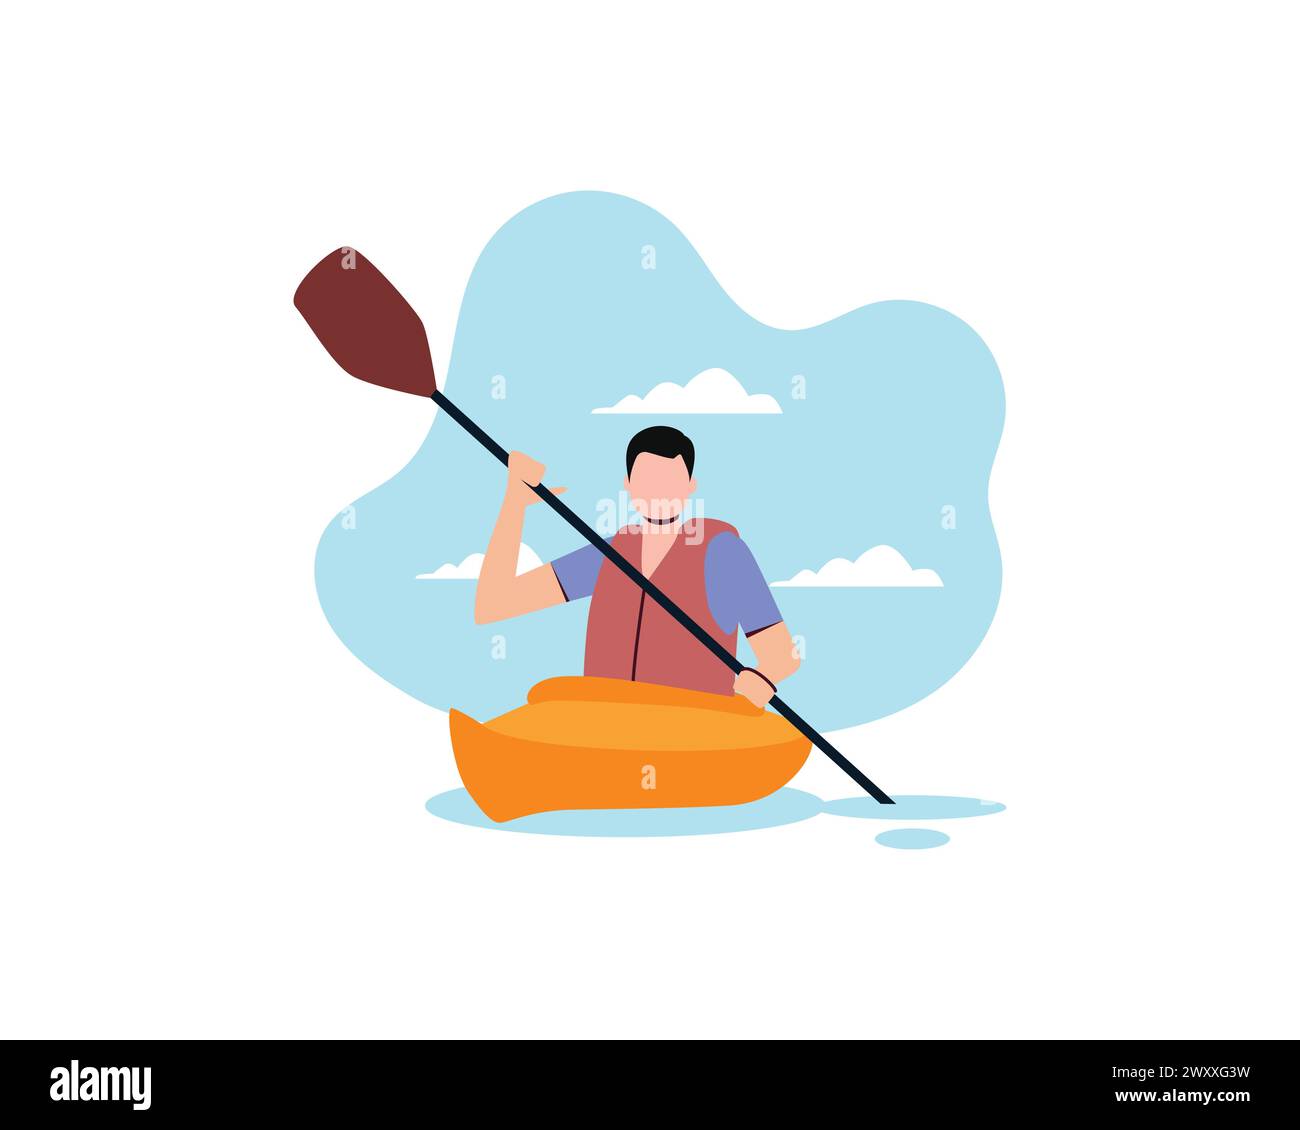 Jeune homme solitaire bateau à rames avec paddle. Personnes actives avec la conception d'illustration vectorielle de sport extrême et d'activité de loisirs isolée sur fond blanc. Illustration de Vecteur